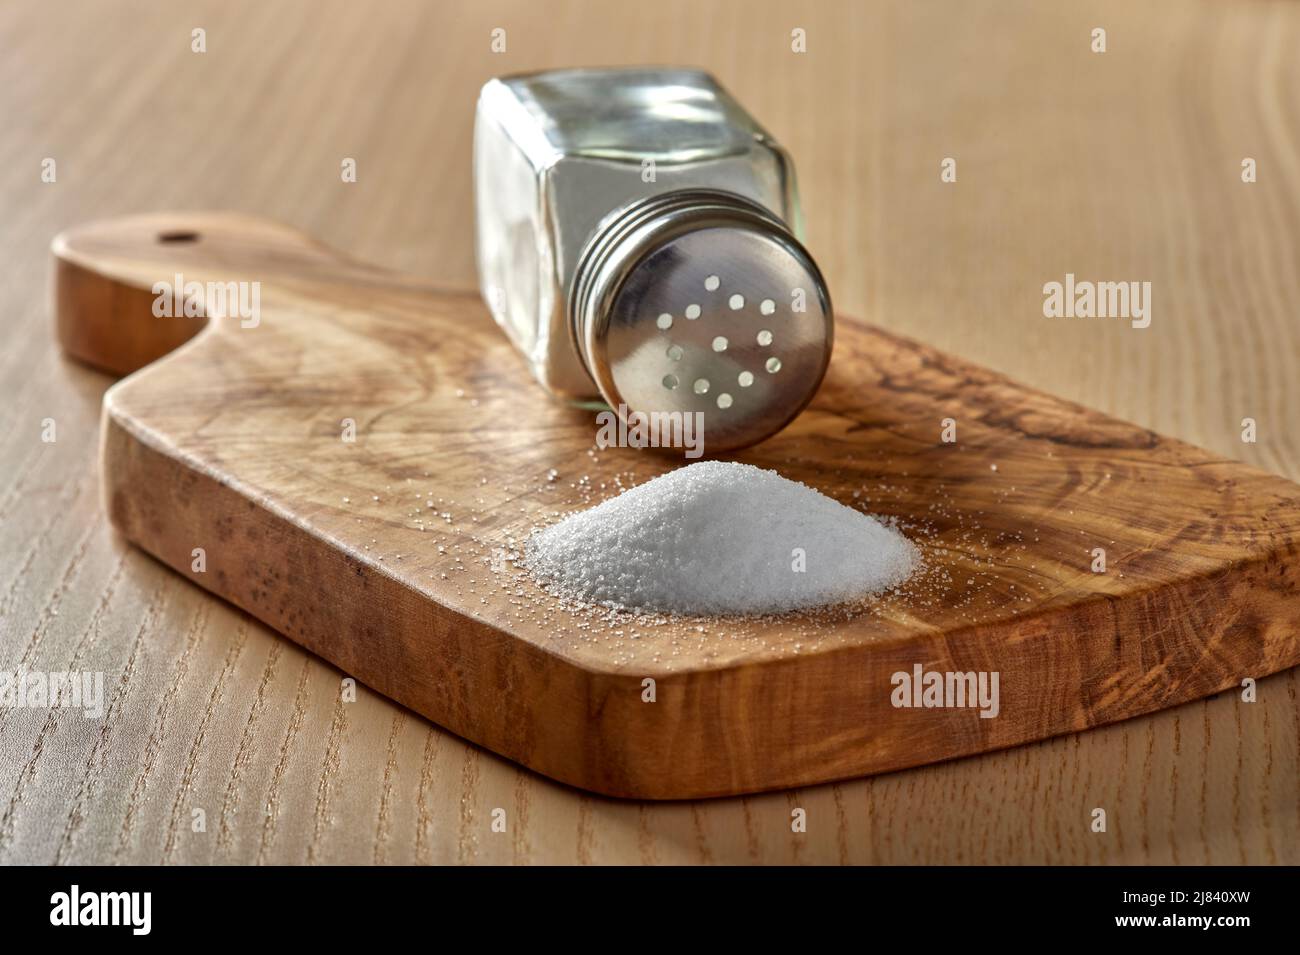 Verschüttetes Salz und ein Salzstreuer auf einem Schneidebrett aus Olivenholz - Nahaufnahme Stockfoto